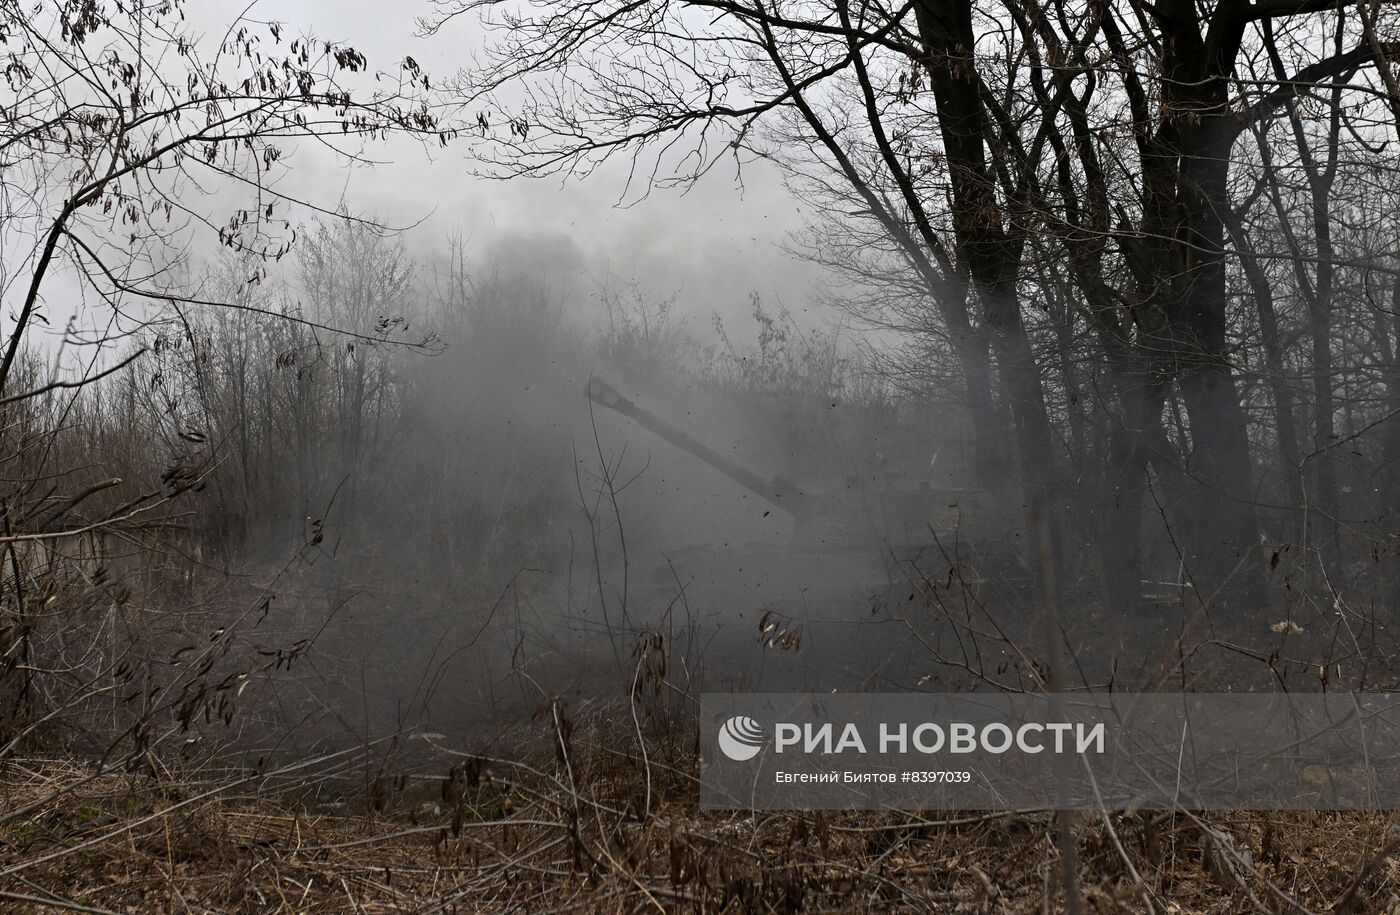 Работа артиллерии ВС РФ на Донецком направлении